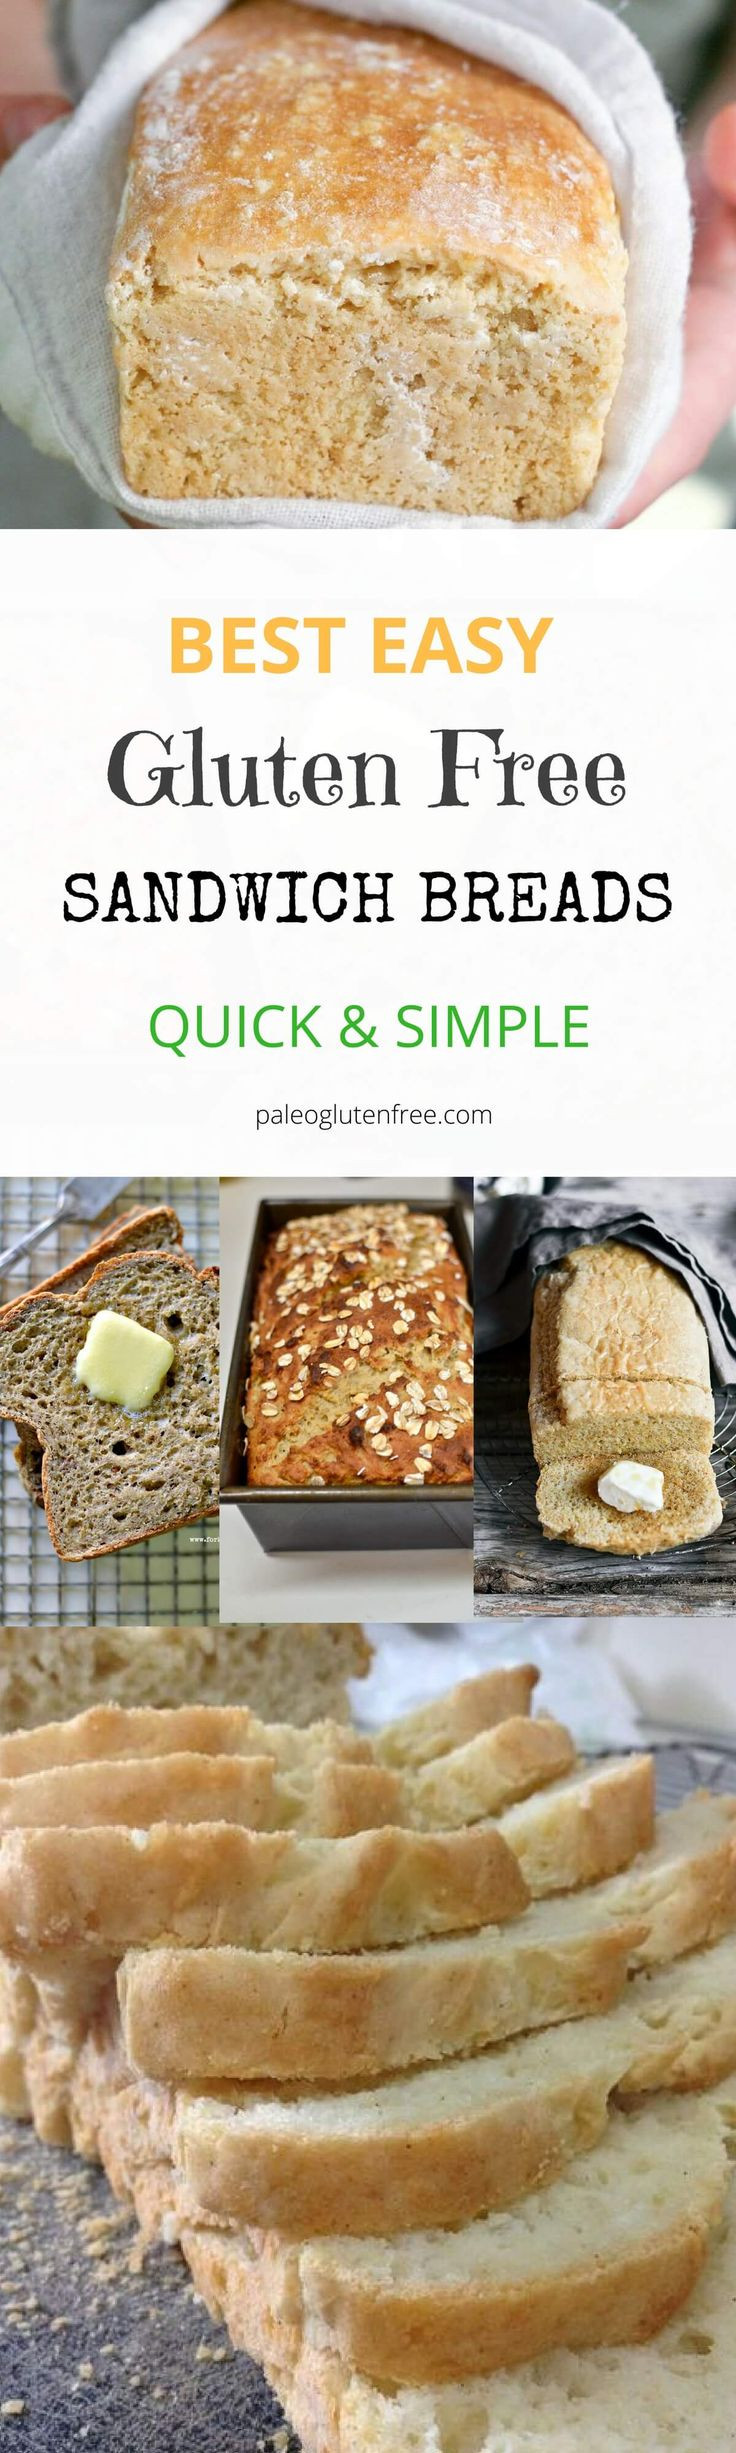 Atlanta Bread Company Gluten Free
 Best 25 Sandwich bread recipes ideas on Pinterest